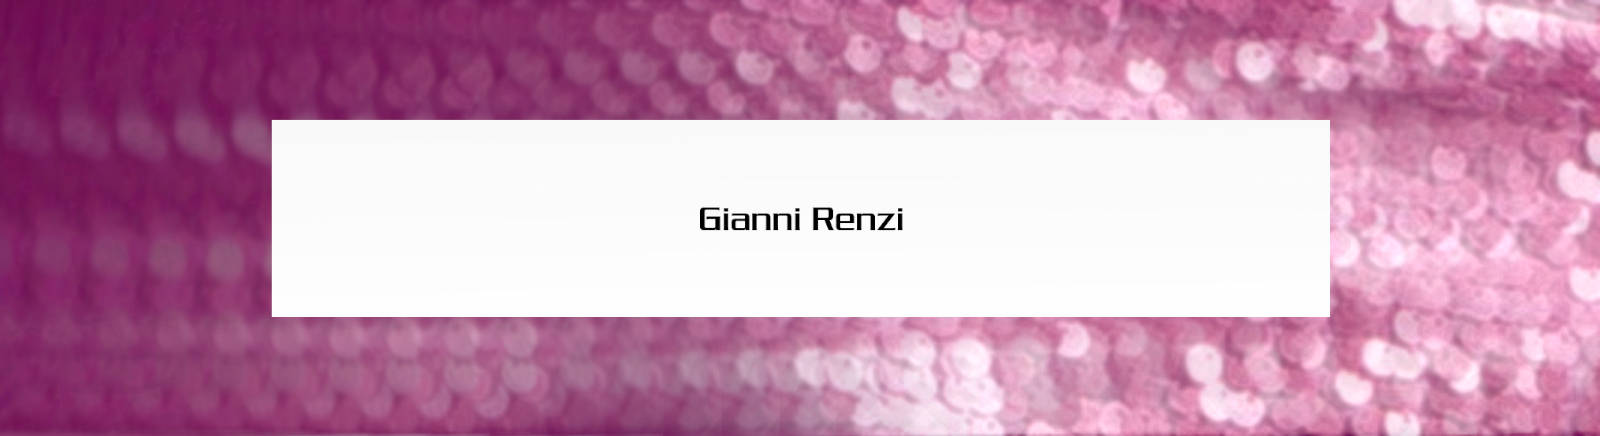 Prange: Gianni Renzi Schnürschuhe für Damen online shoppen